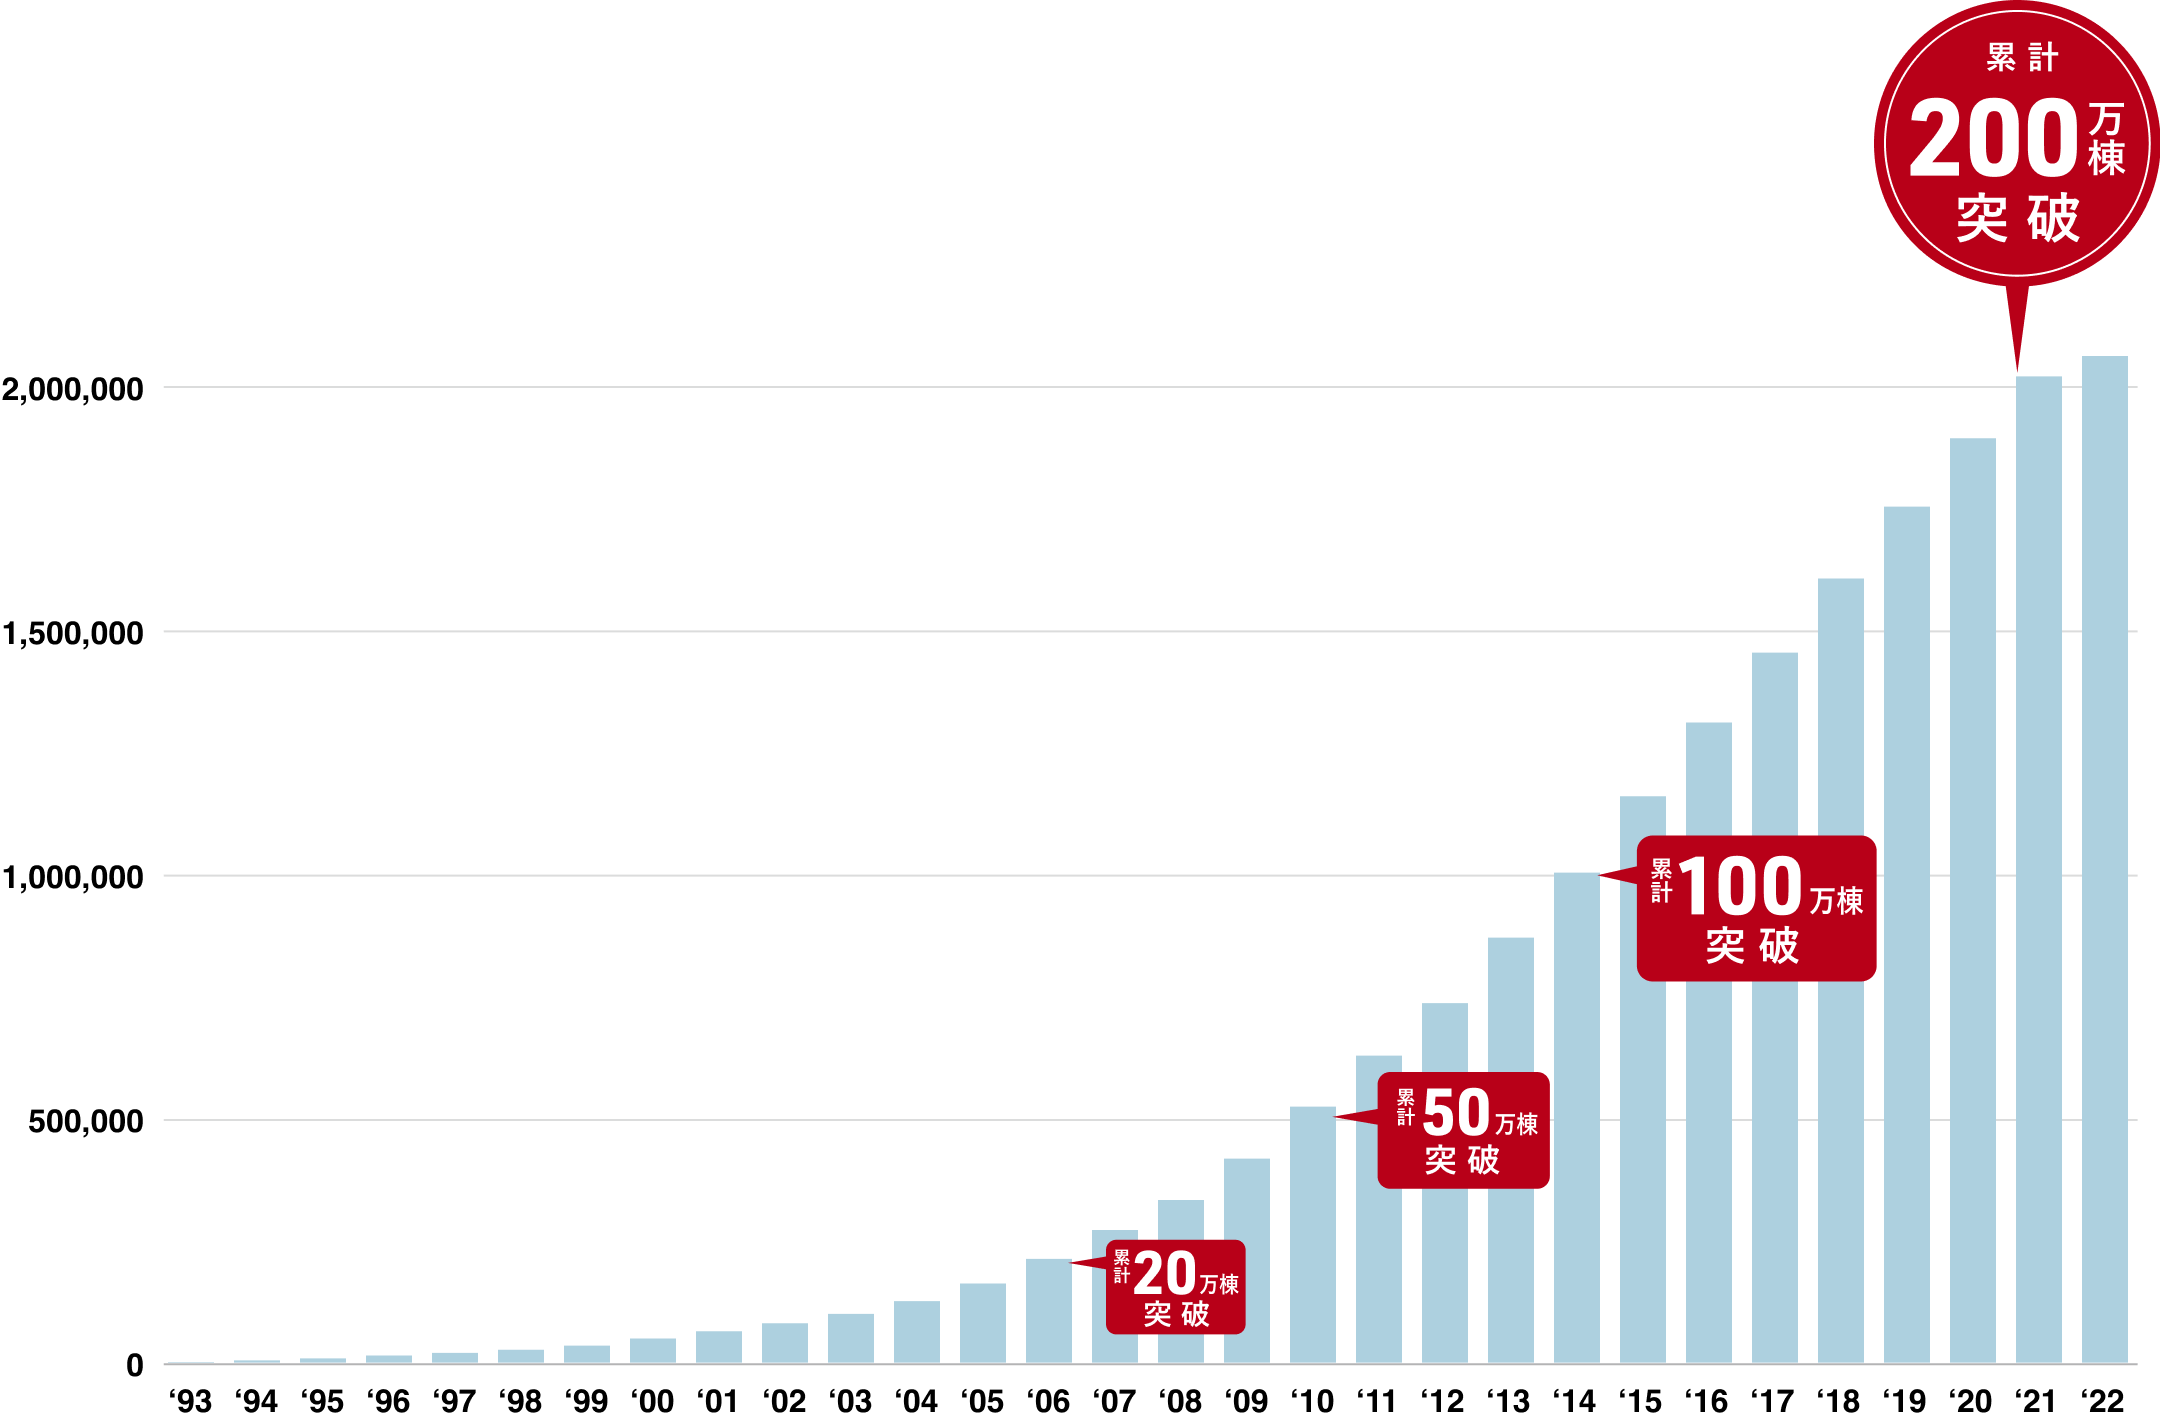 93年から22年にかけて、右肩上がりに増加している棒グラフ。21年に累計200万棟突破。